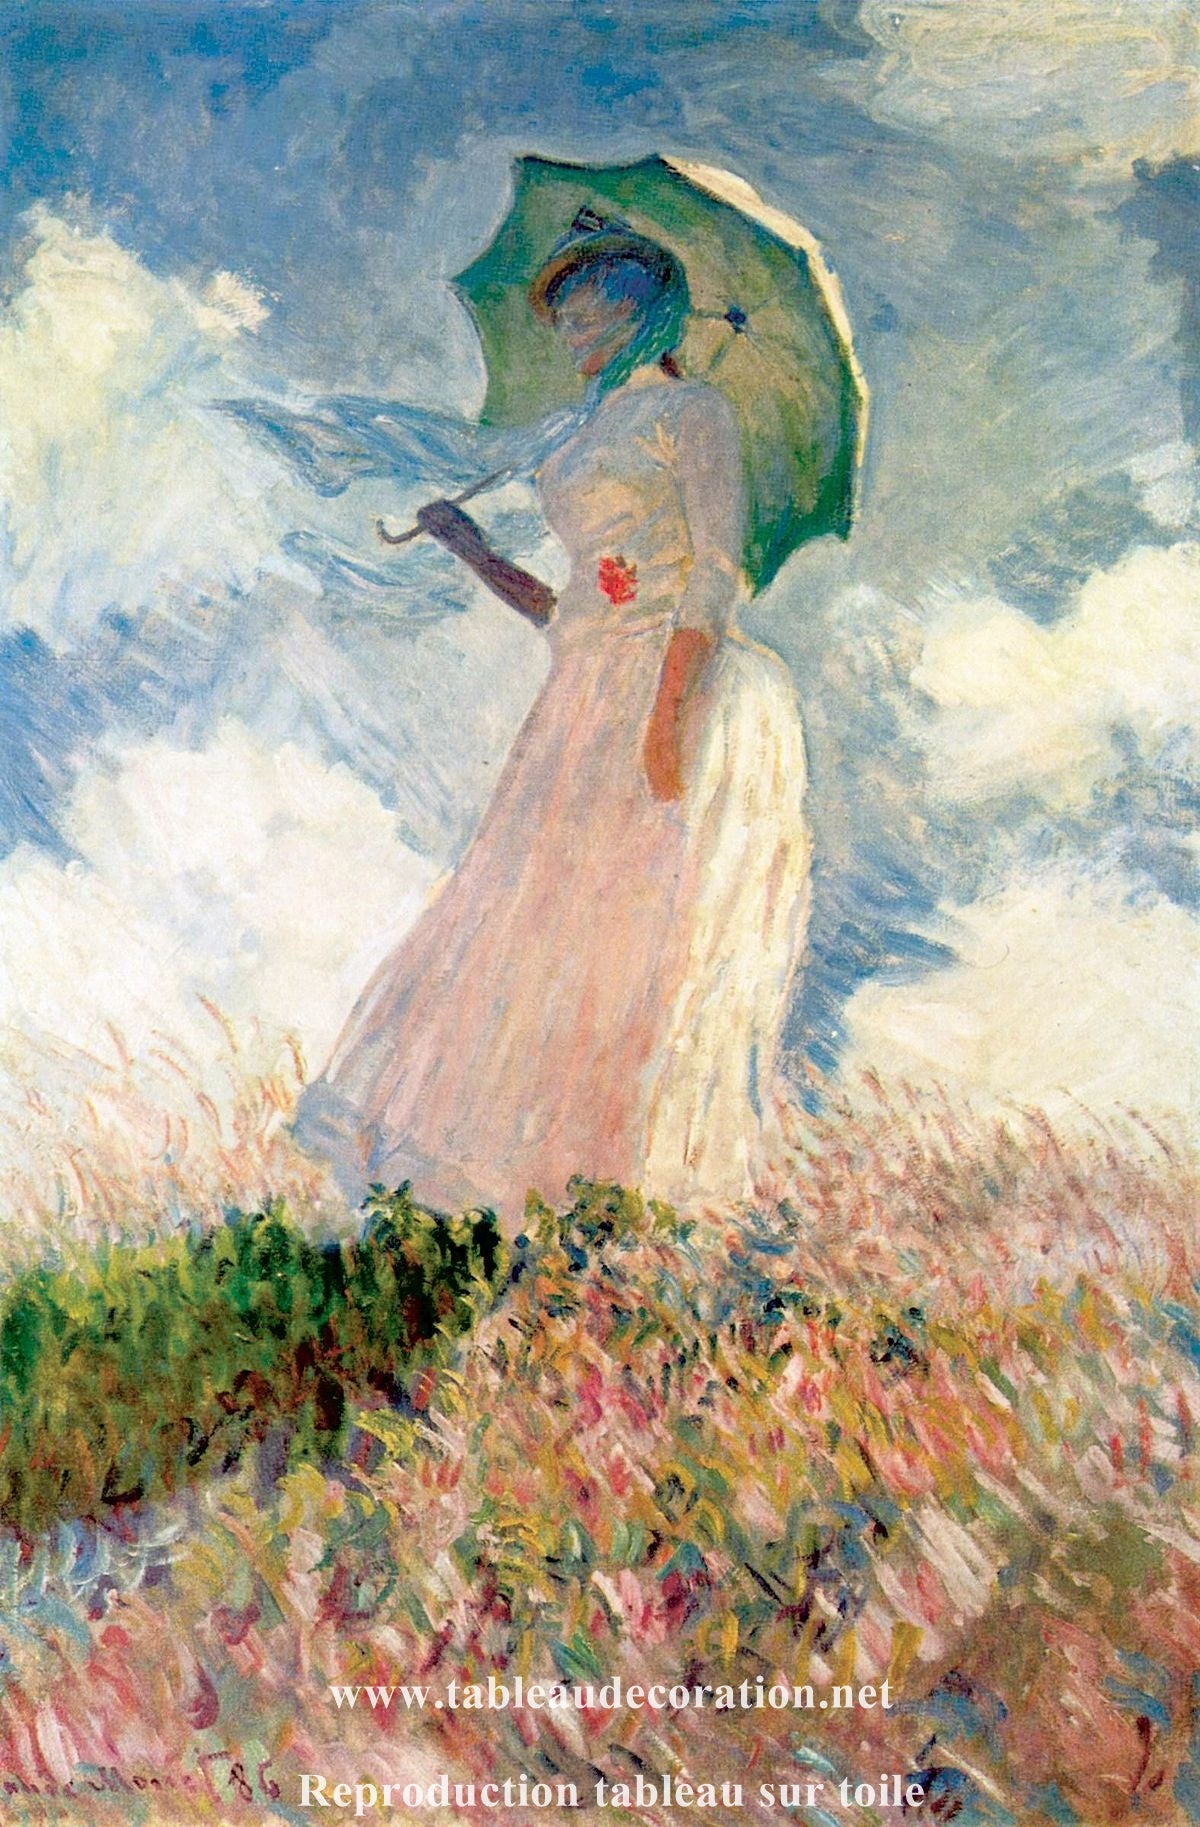 Femme à l'ombrelle tournée vers la gauche - Reproduction tableau monet